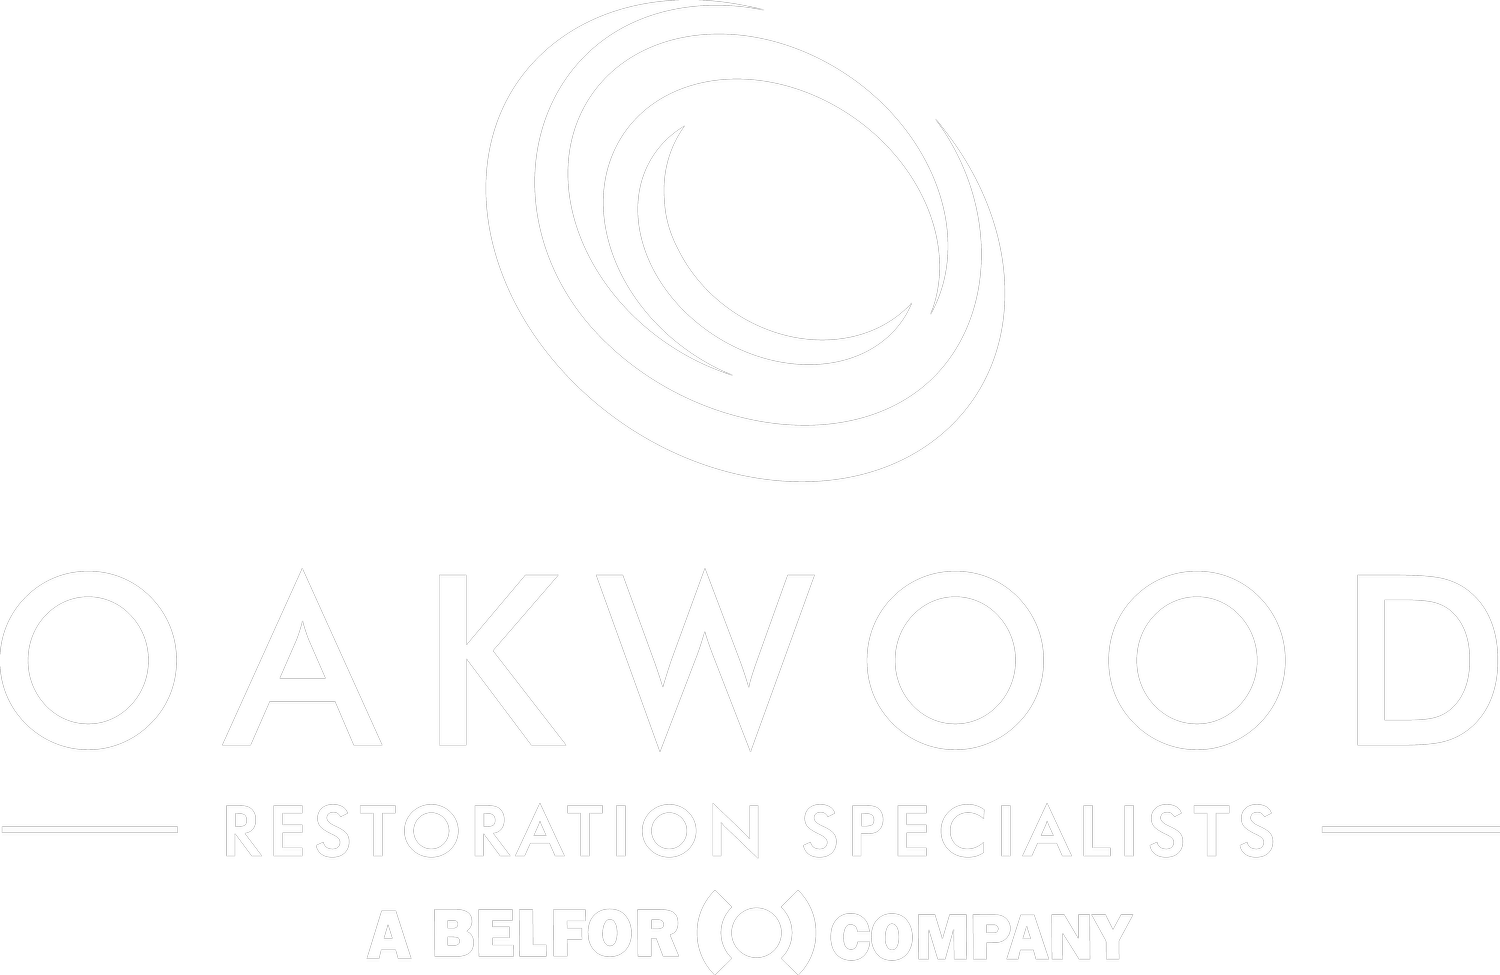 Oakwood Restoration Specialists